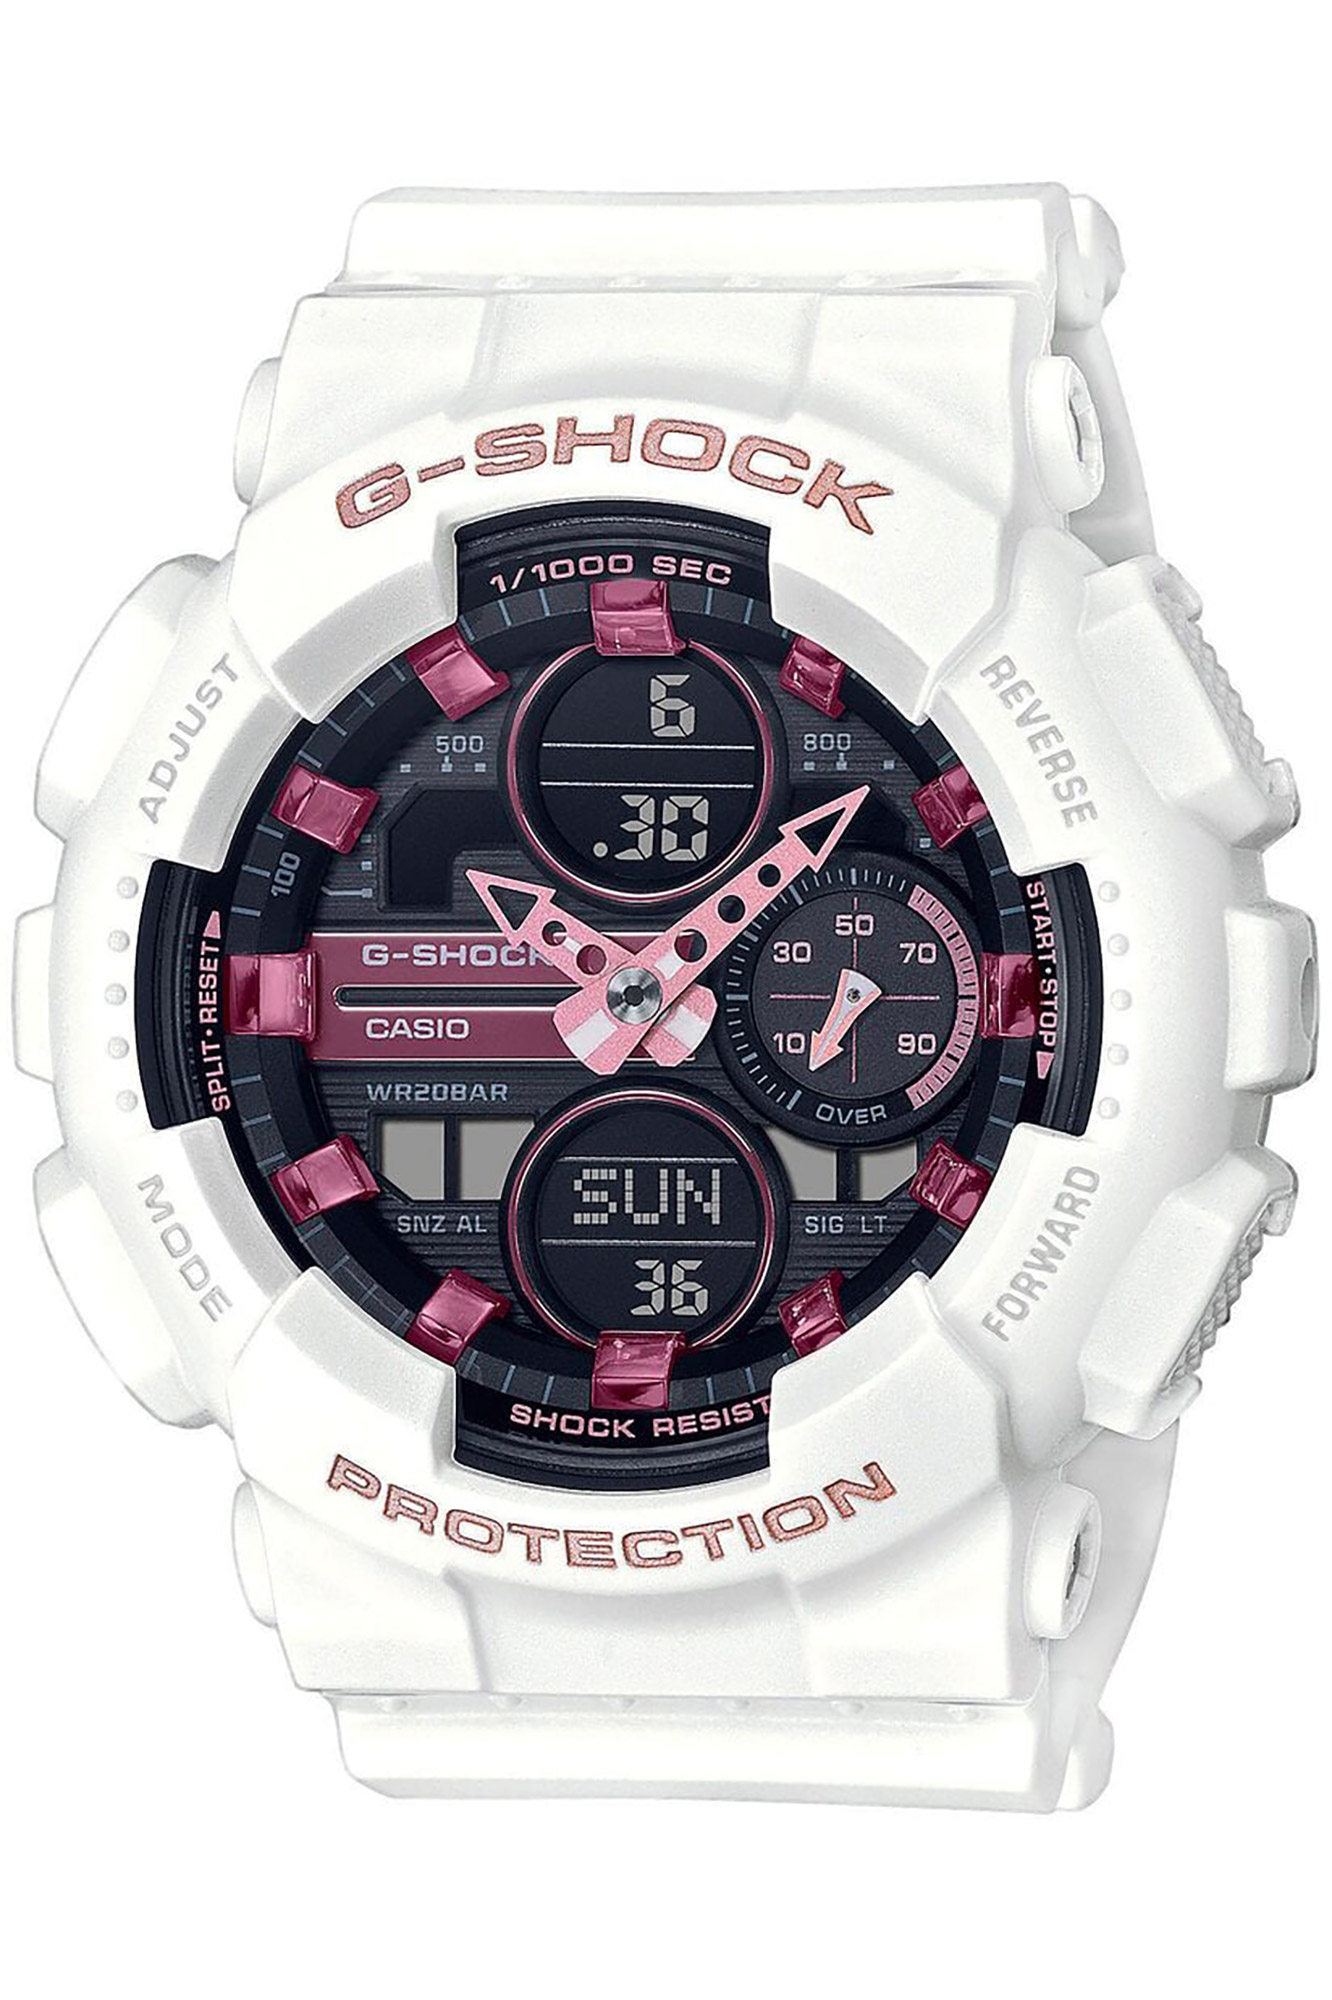 Uhr CASIO G-Shock gma-s140m-7aer